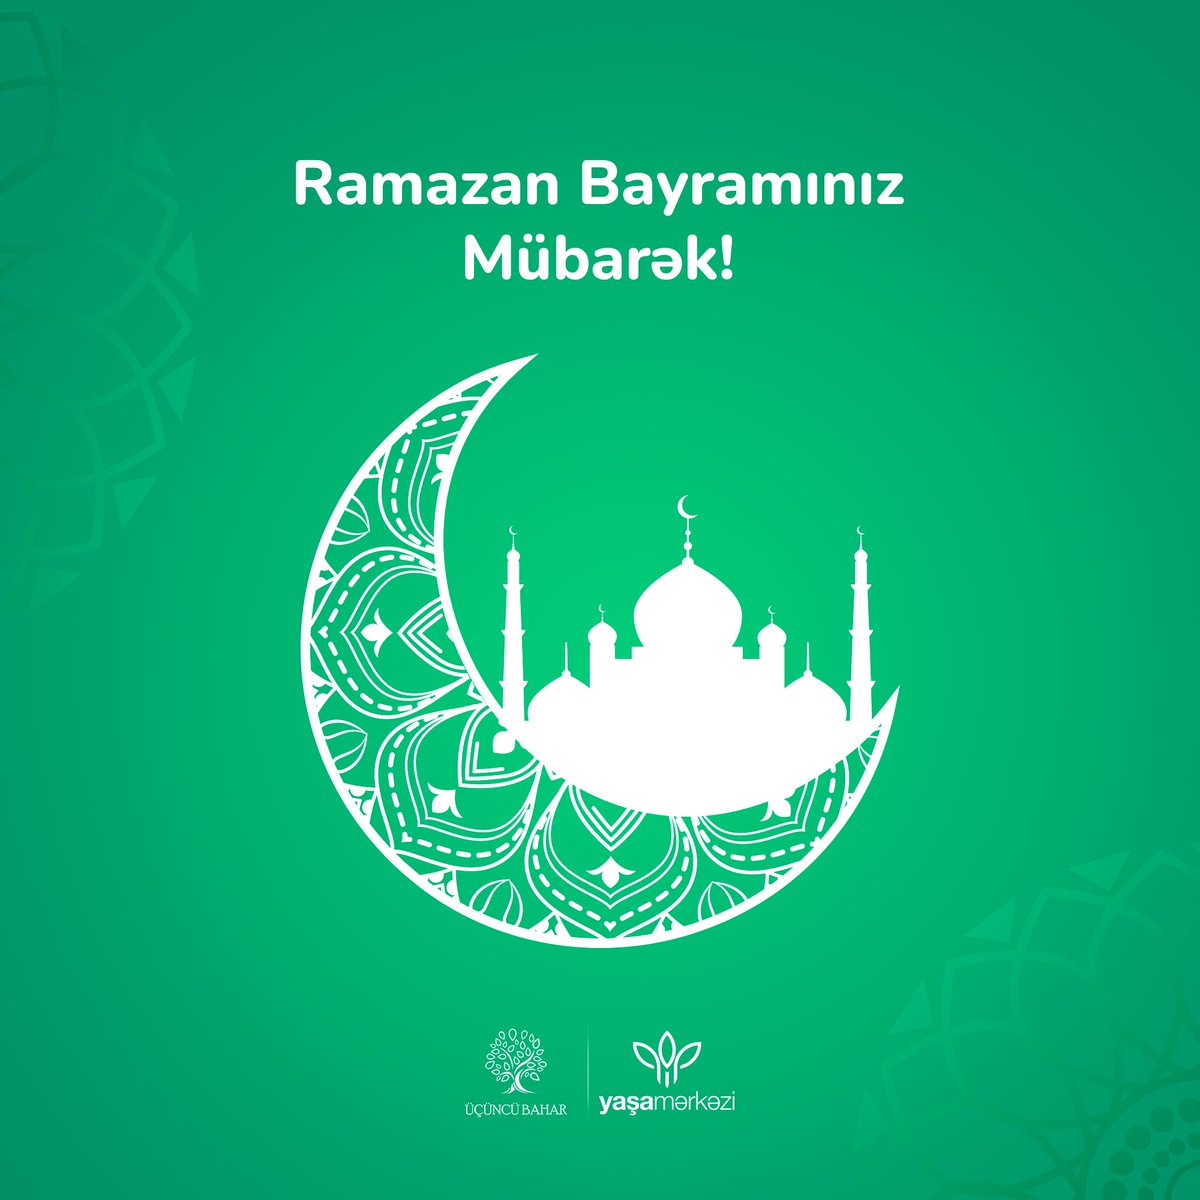 Ramazan bayramında süfrənizdən bərəkət,  evinizdən xoşbəxtlik əskik olmasın. Tutduğunuz oruc və etdiyiniz dualar qəbul olunsun. Bayramınız mübarək! 🌙

#badmintonazerbaijan #ramazan #happyaidmubarak